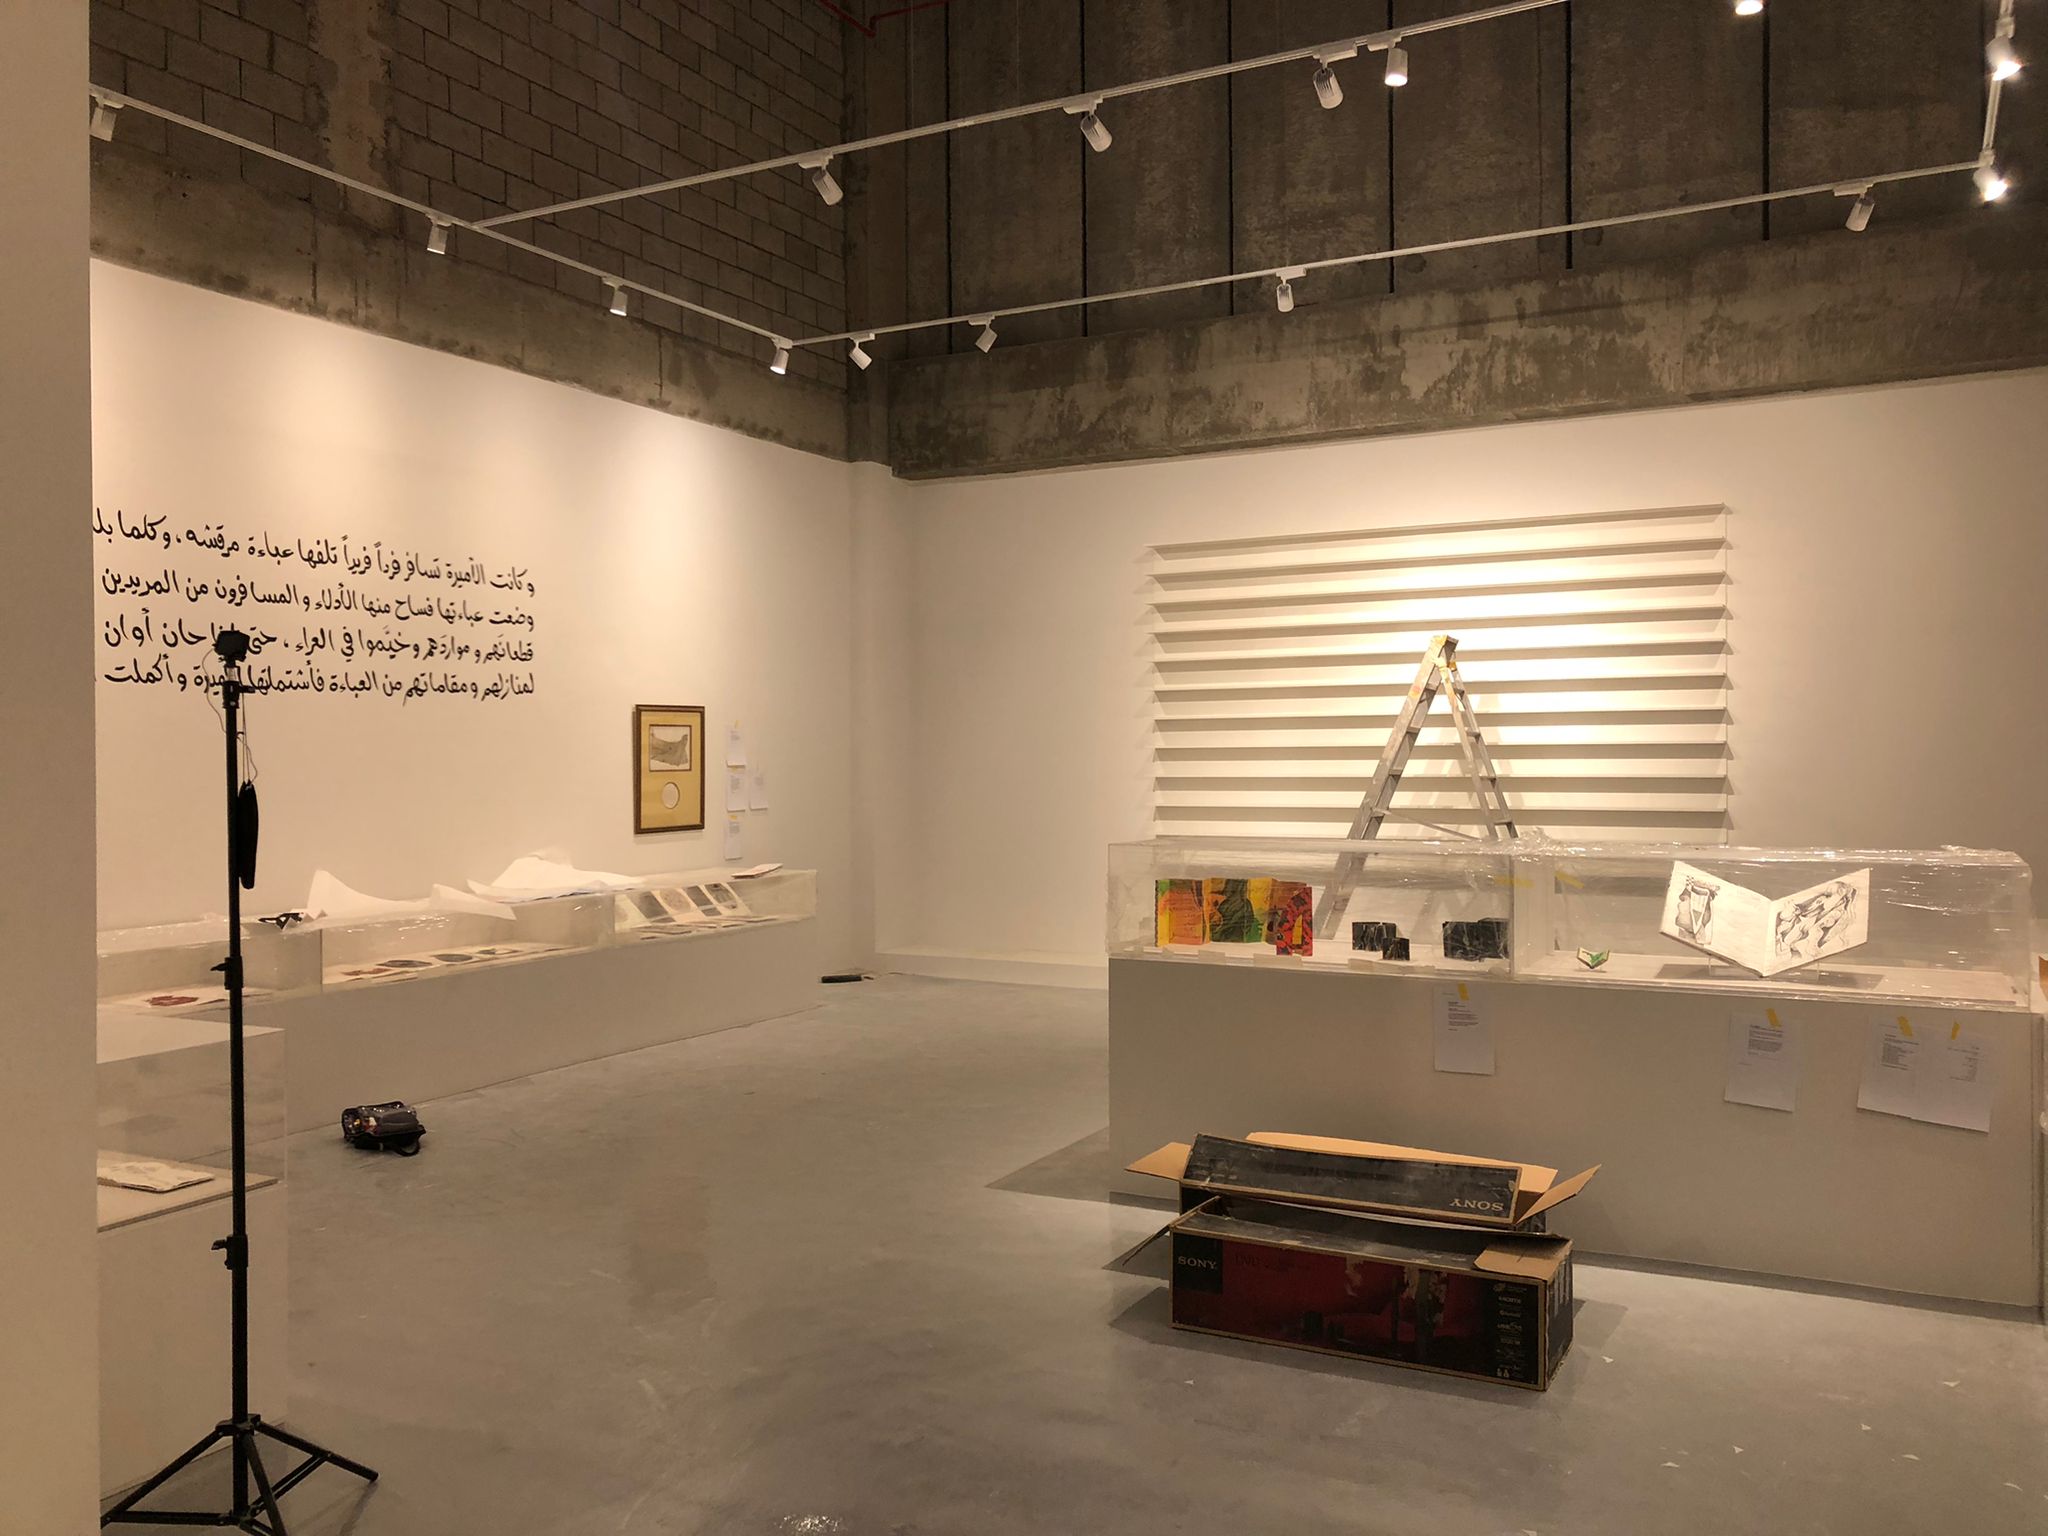 Scénographie, production et montage – 21,39 Jeddah Arts – Amakin | Octopus